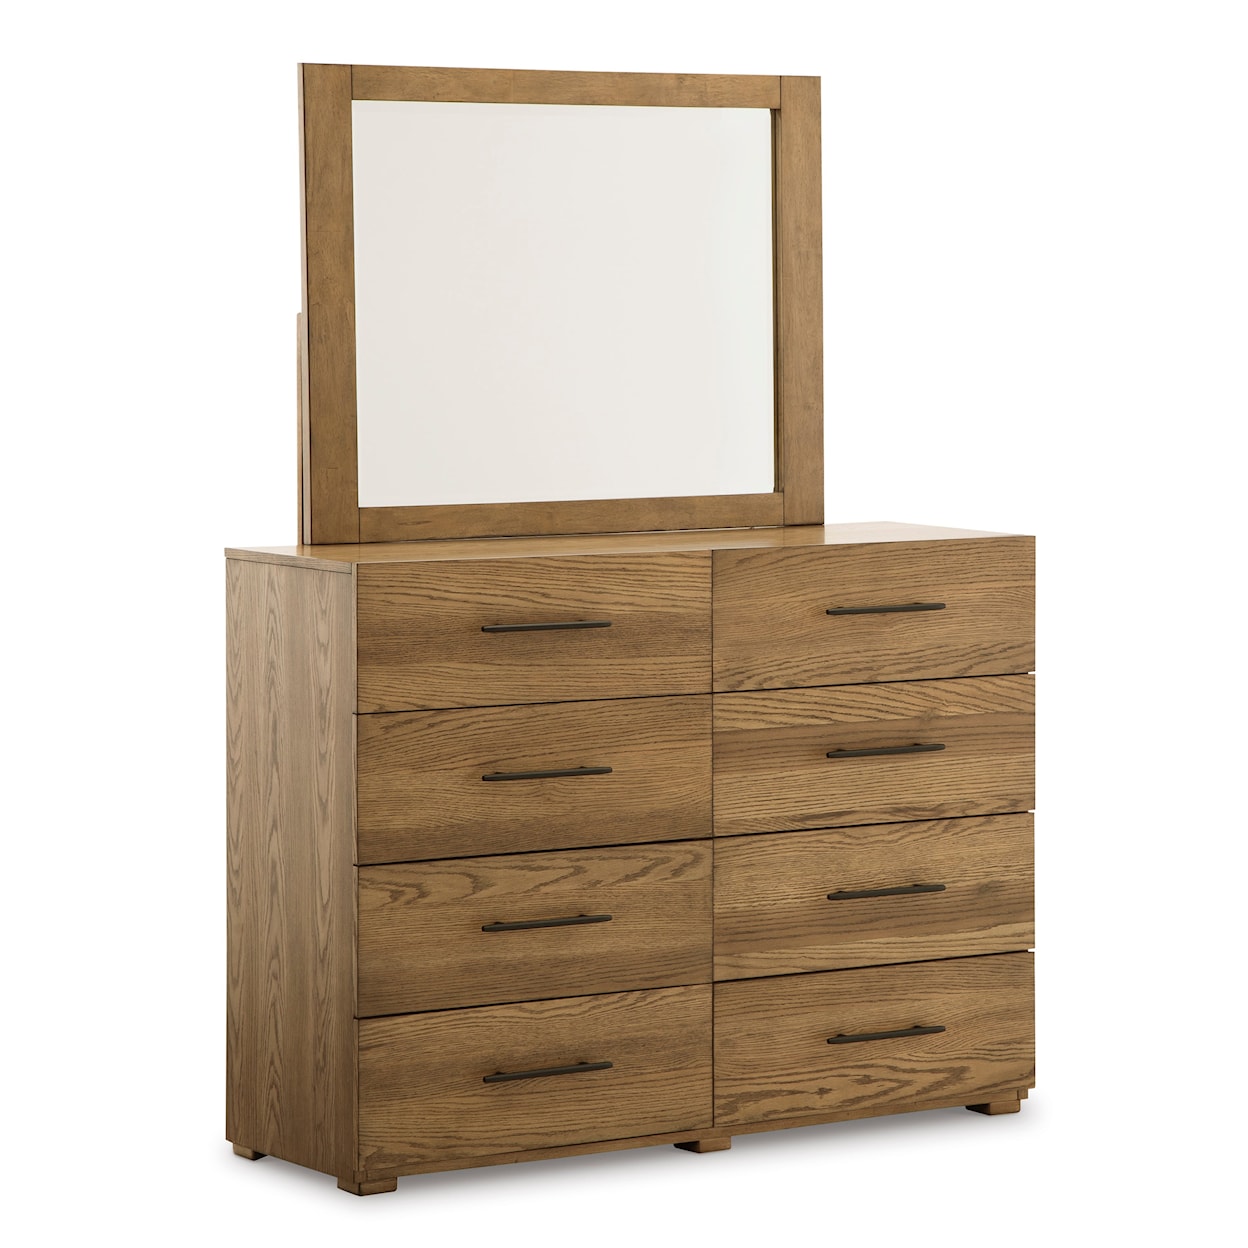 StyleLine Dakmore Dresser and Mirror